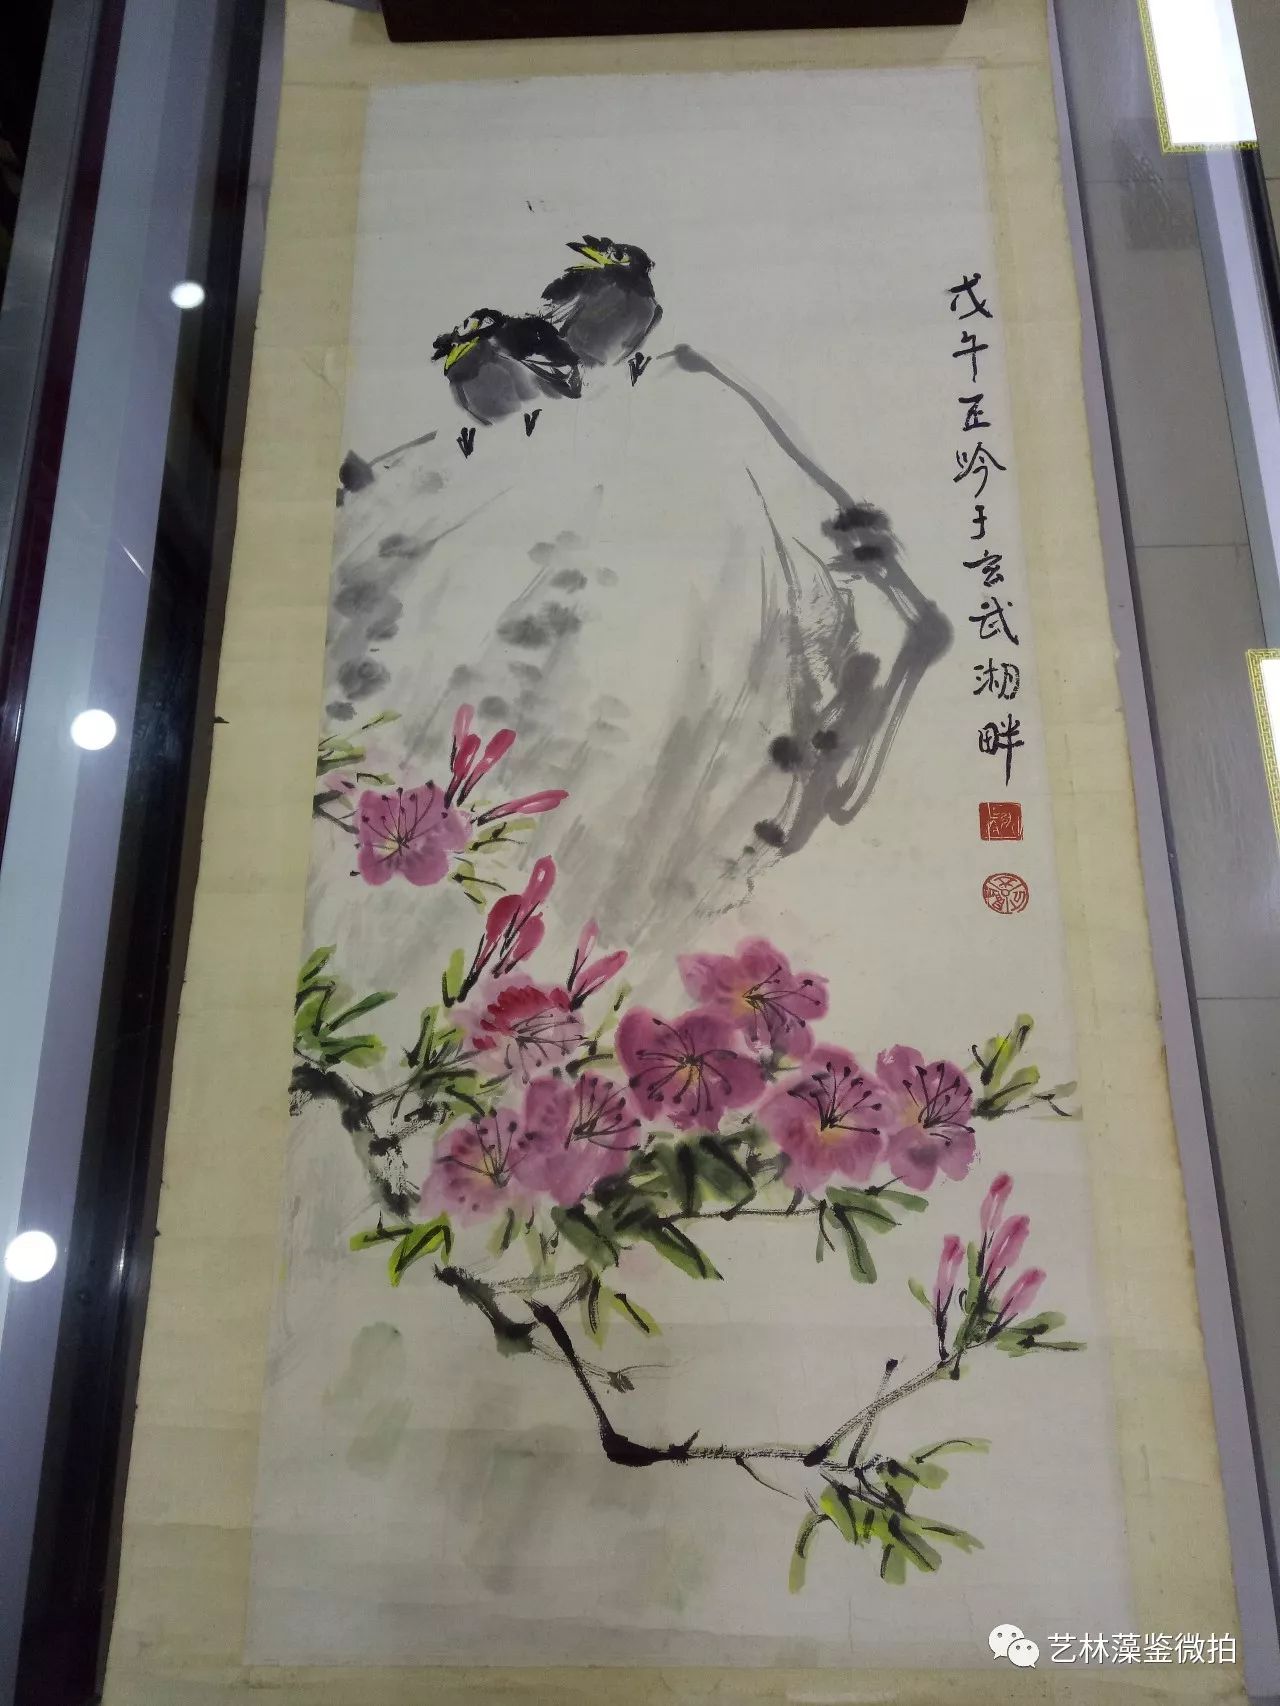 美术家协会会员,南京书画院特约画师.